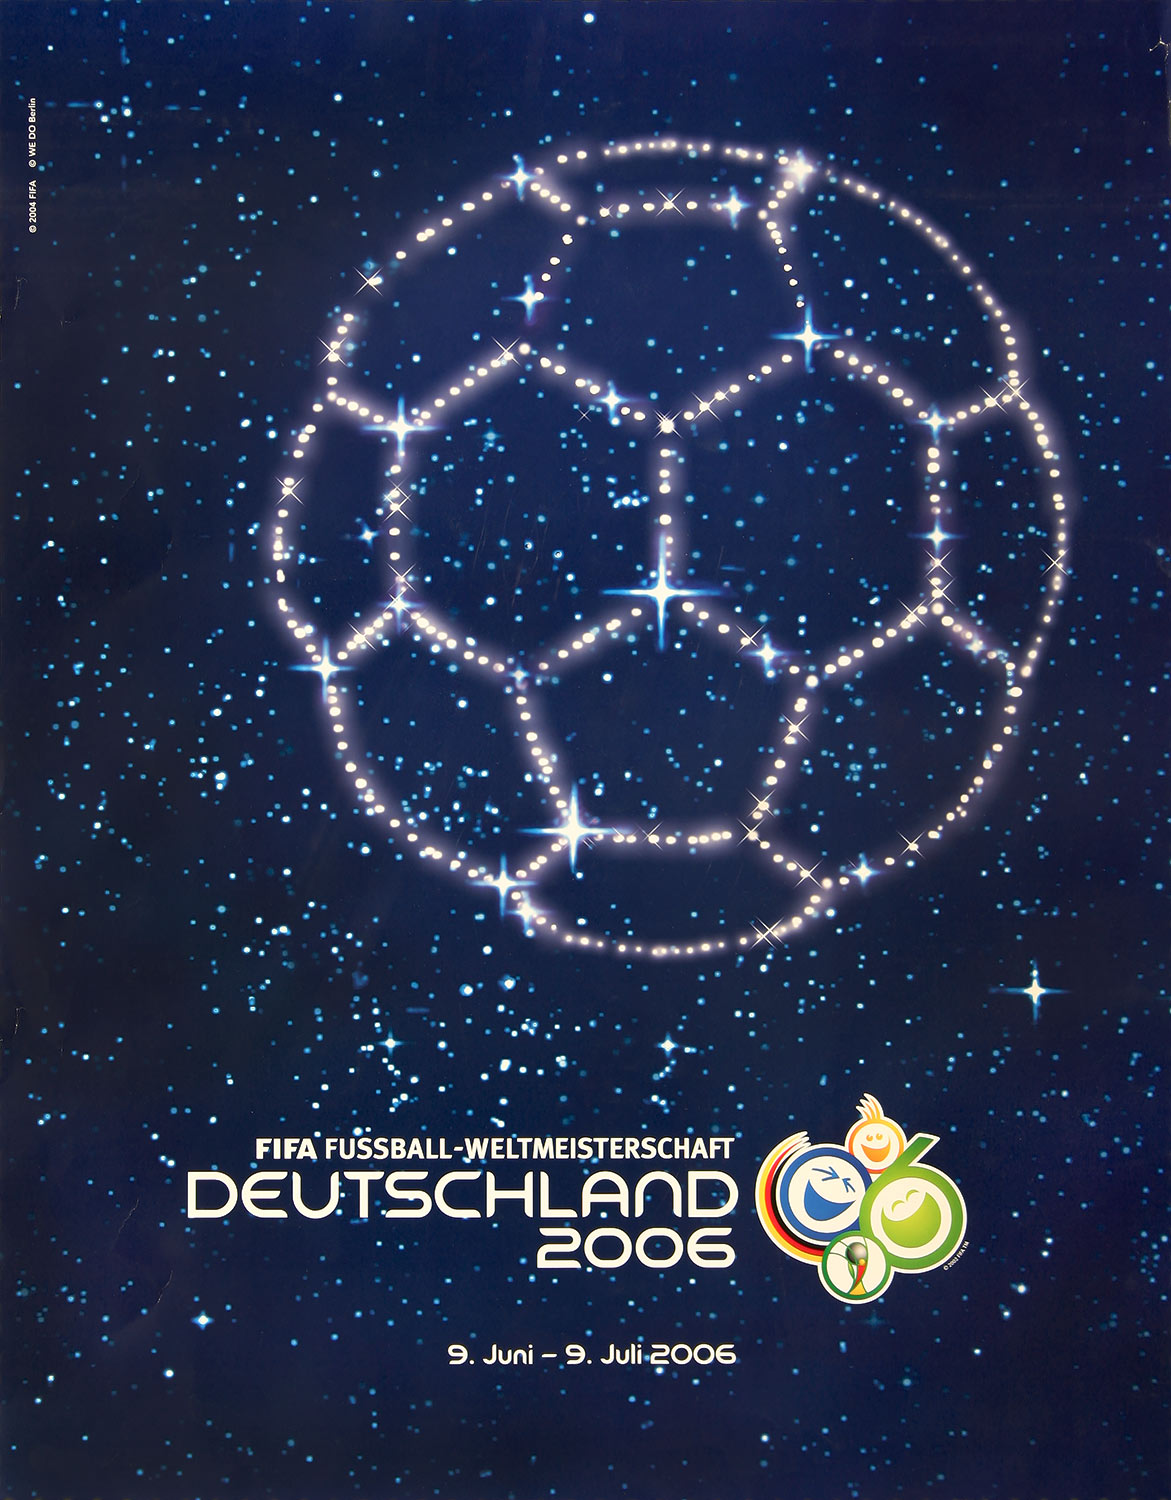 Plakat mit Abbildung eines Sternenhimmels in Form eines Fussballs.